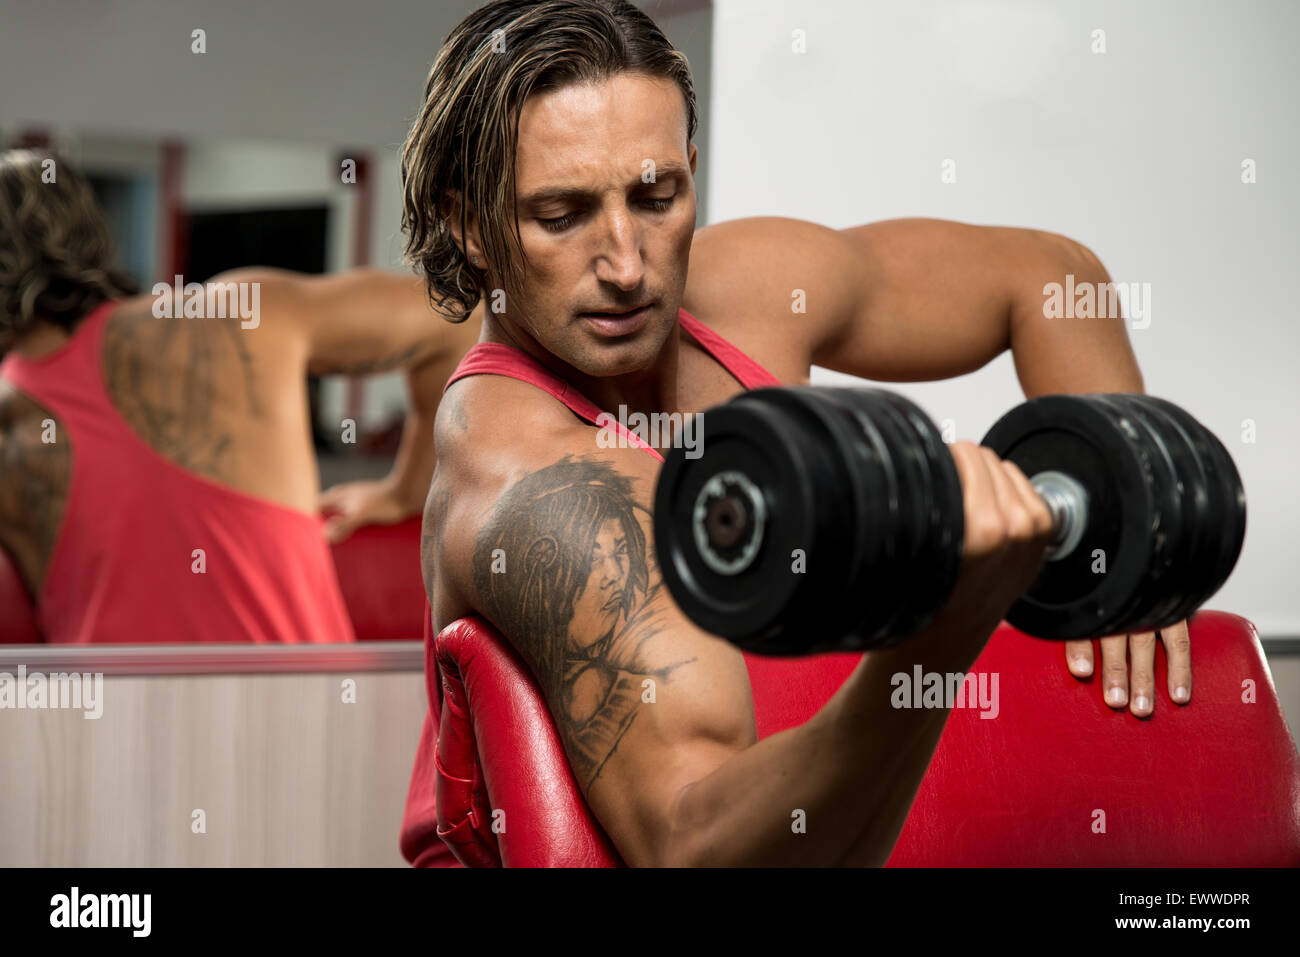 https://c8.alamy.com/comp/EWWDPR/powerful-muscular-man-lifting-weights-EWWDPR.jpg